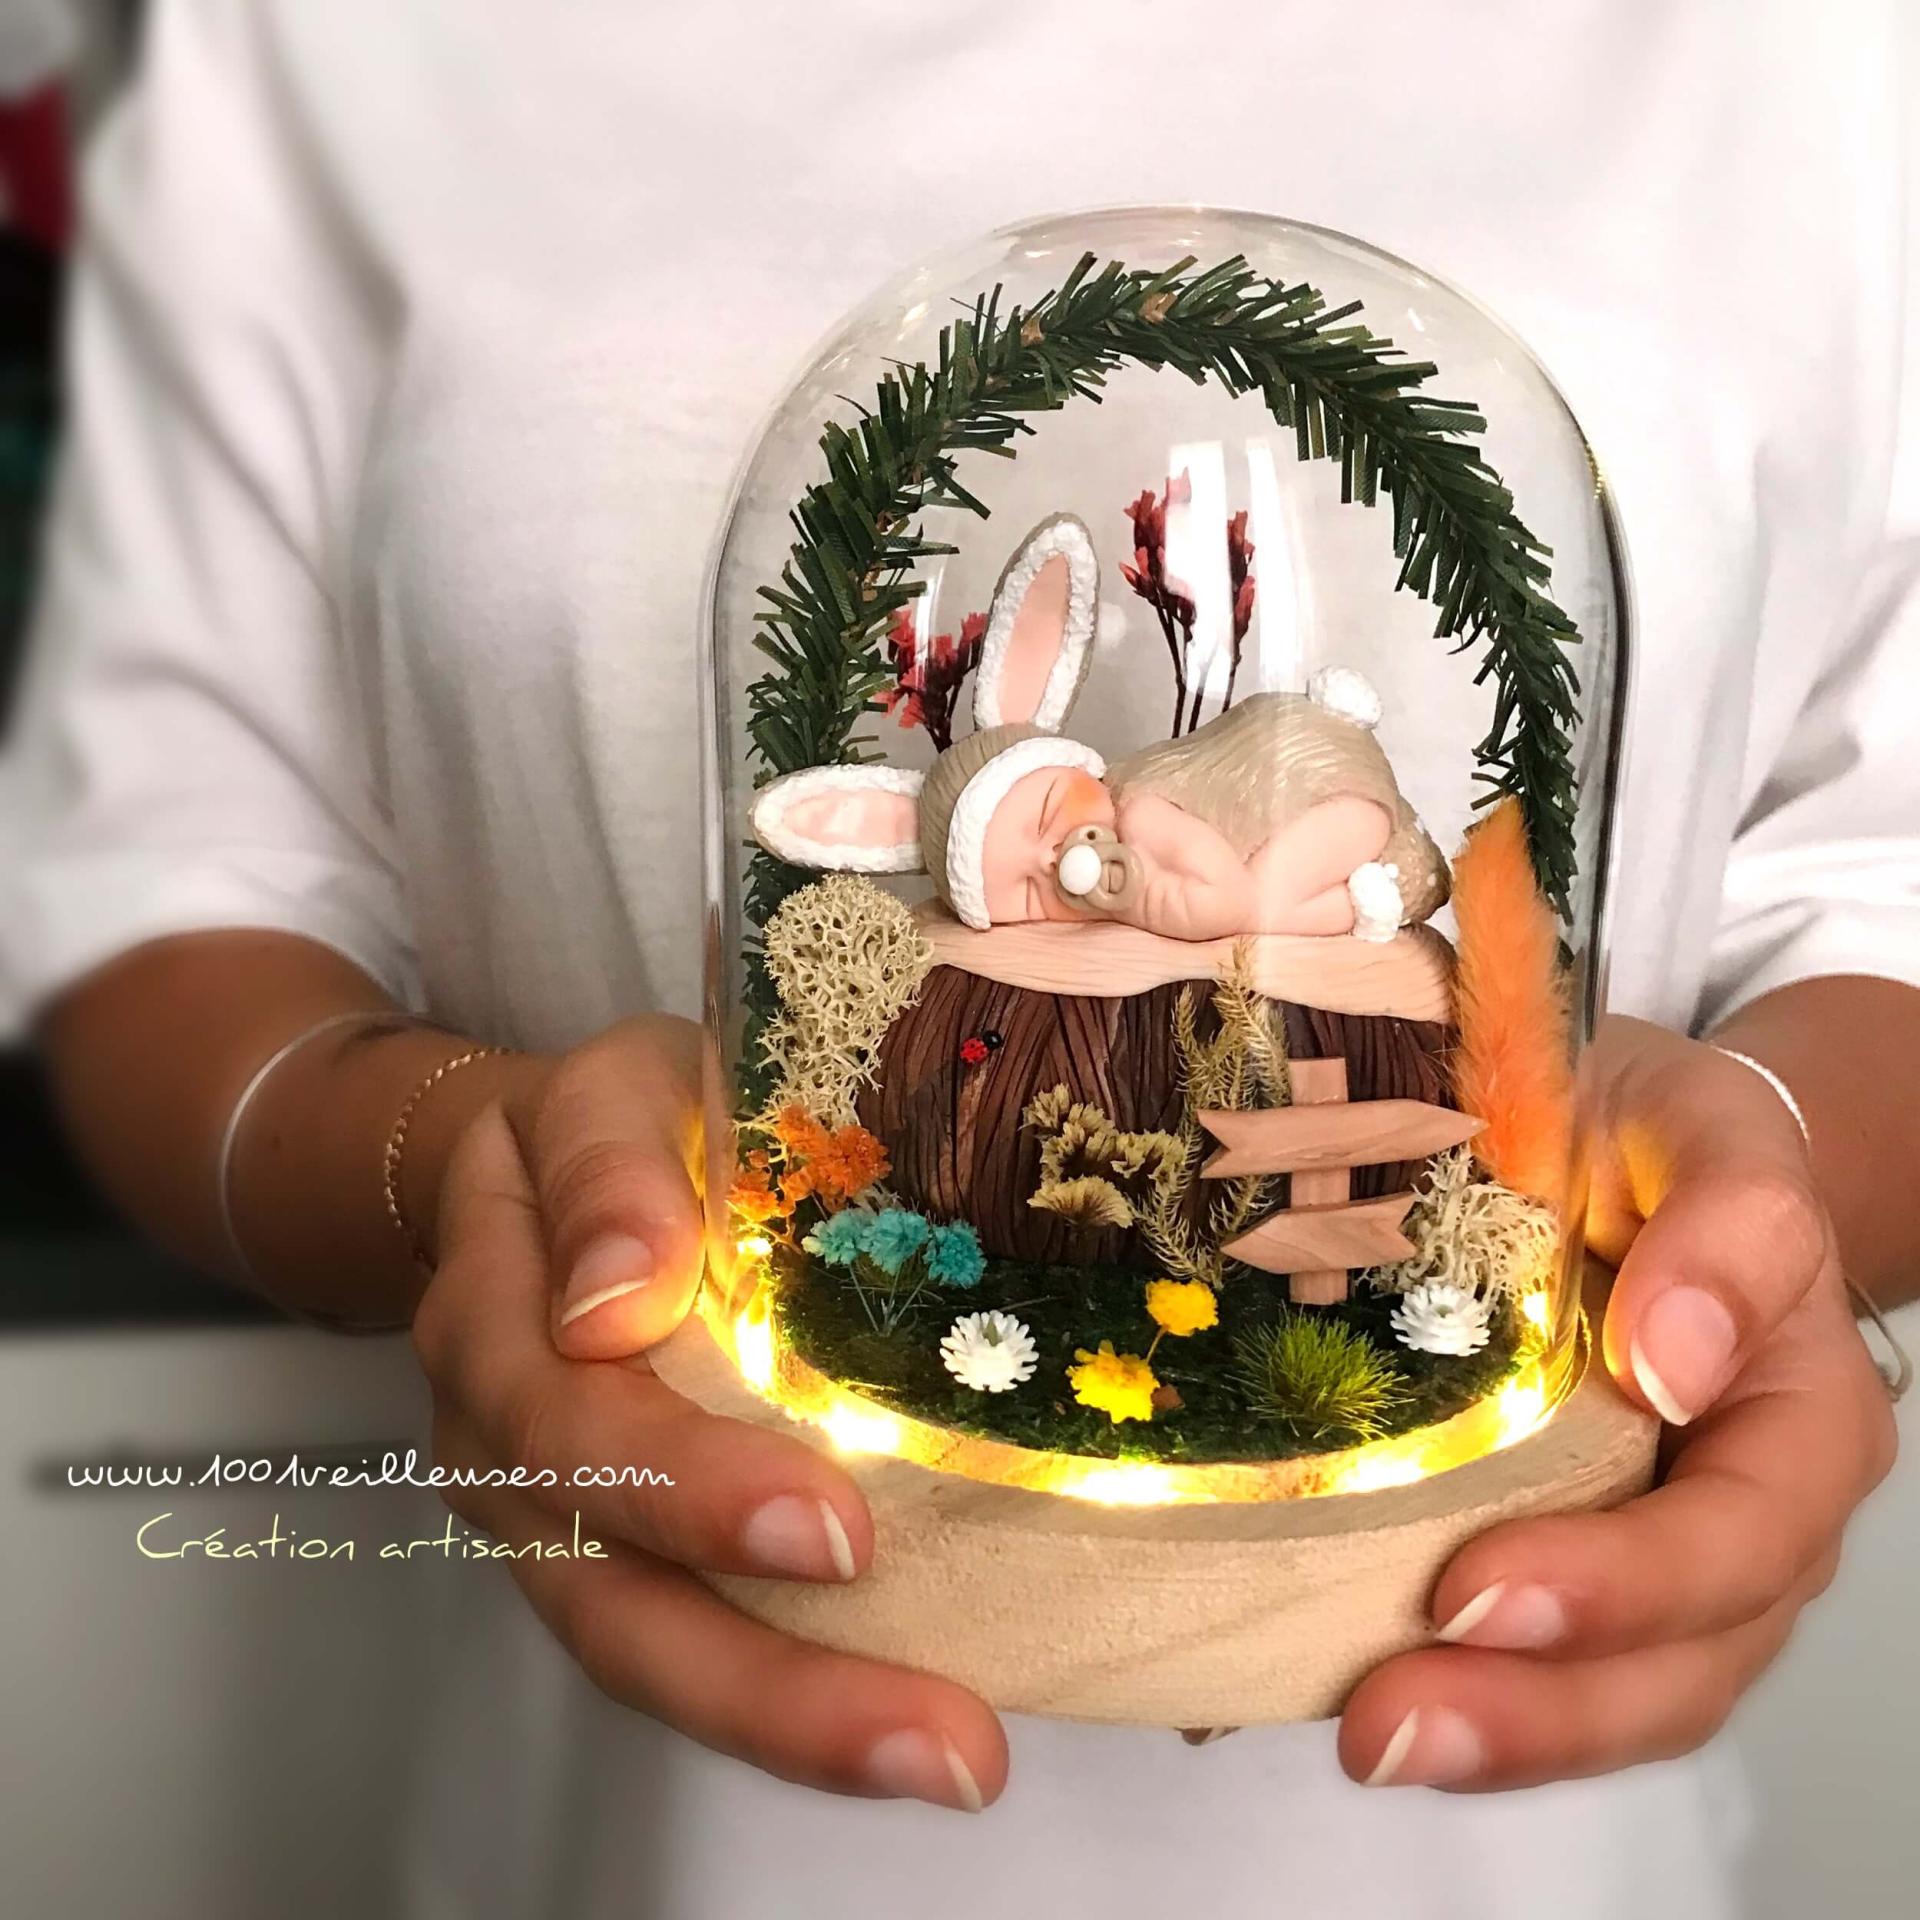 Lámpara de noche personalizada y artesanal en forma de campana eterna, con la representación de un adorable bebé disfrazado de conejo gris, presentado entre las manos